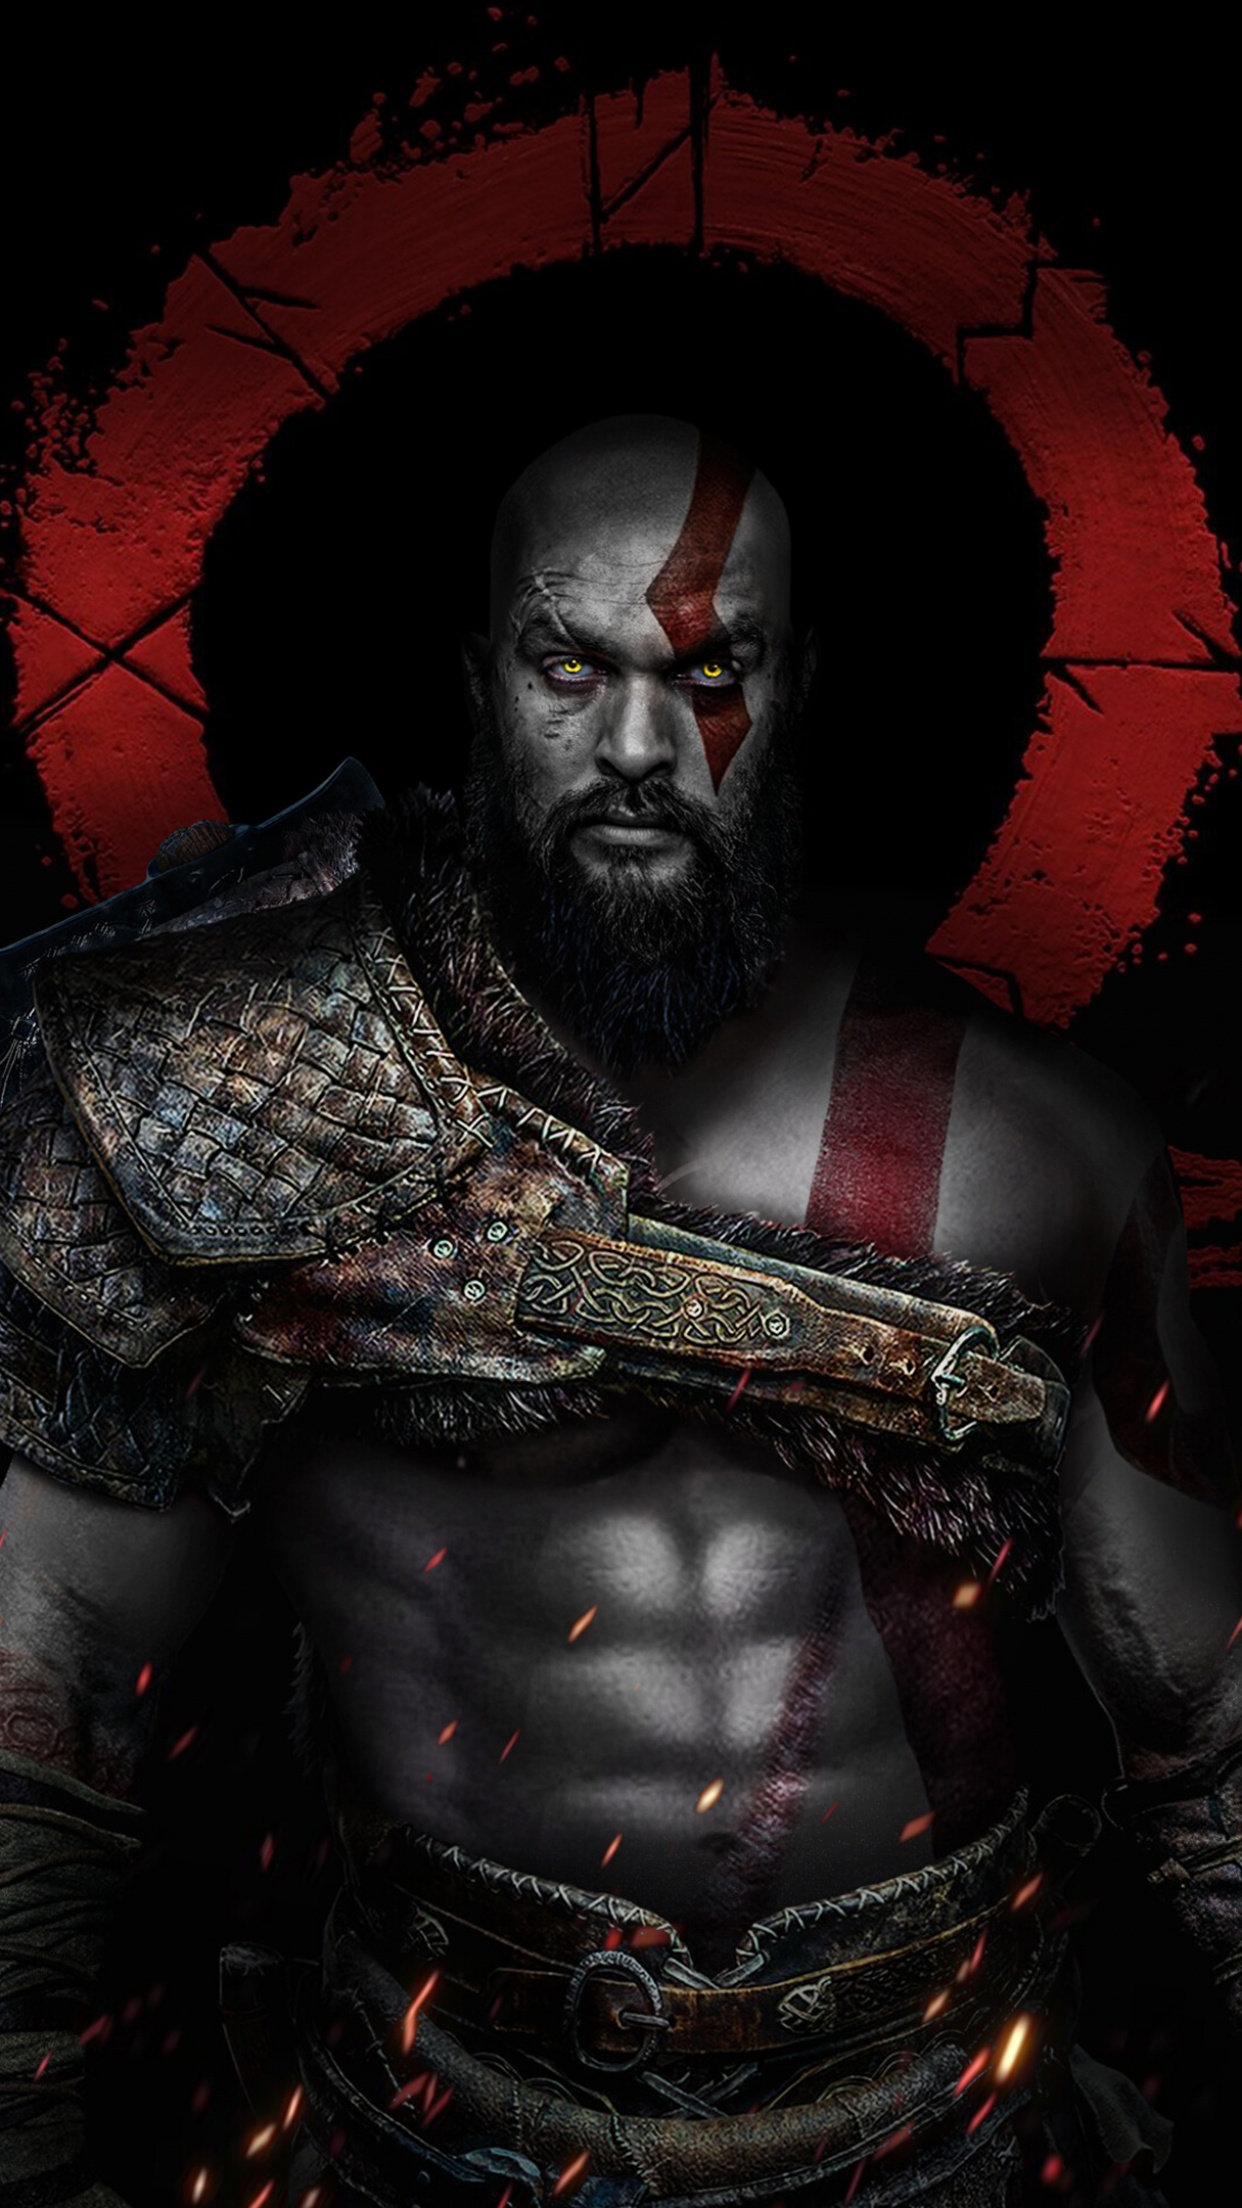 Cùng đắm chìm trong thế giới ảo nơi đầy huyền bí của Kratos - Vị thần chiến tranh với sức mạnh vô song. Trở thành một trong những fan ruộng bậc nhất của tựa game God of War Kratos và cảm nhận sự mãn nguyện trong từng pha hành động.